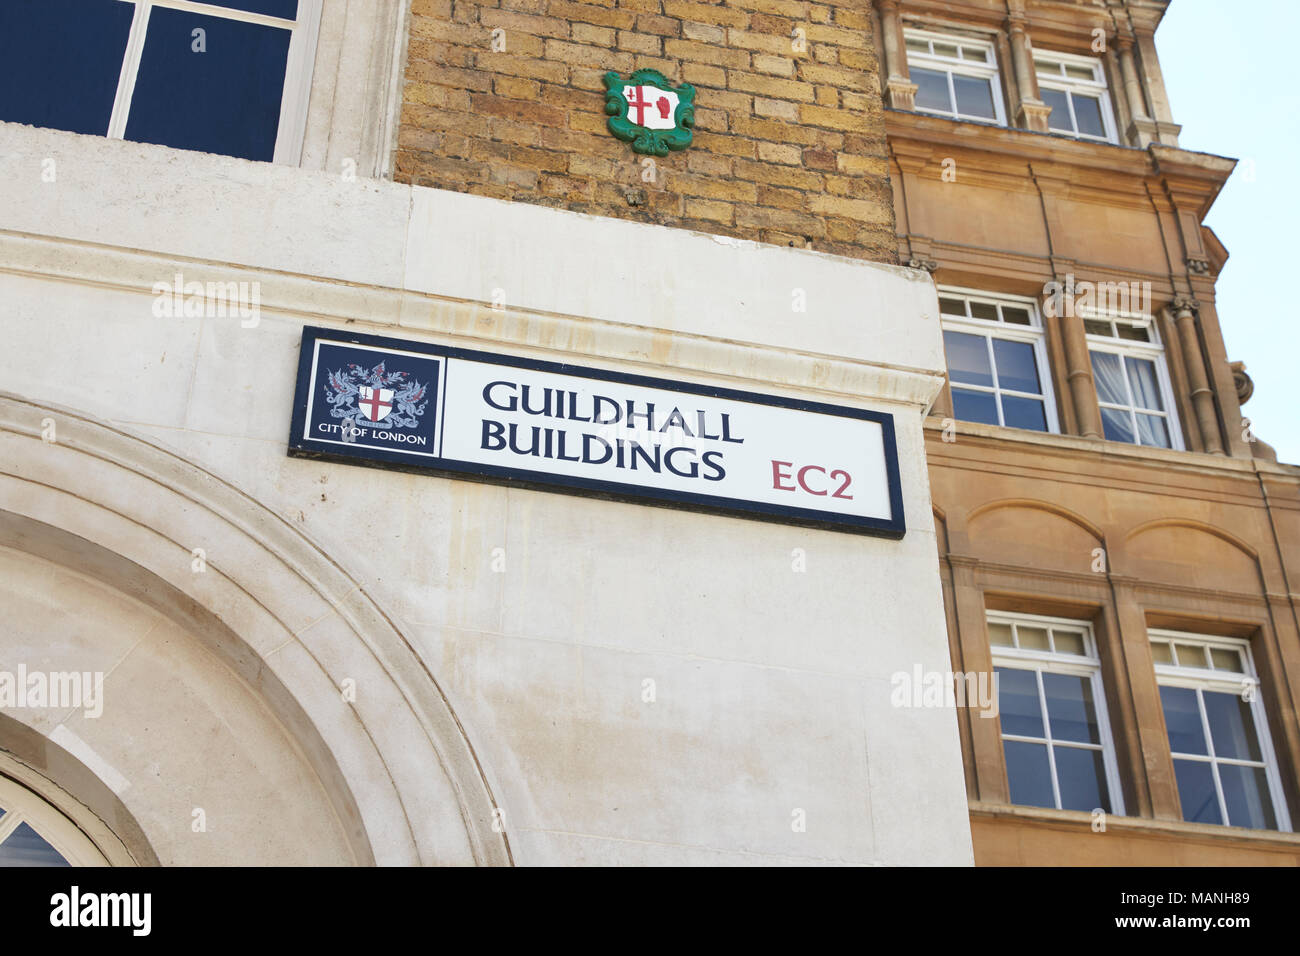 Londres - Mai 2017 : bâtiments Guildhall street sign, London, EC2, détail. Banque D'Images